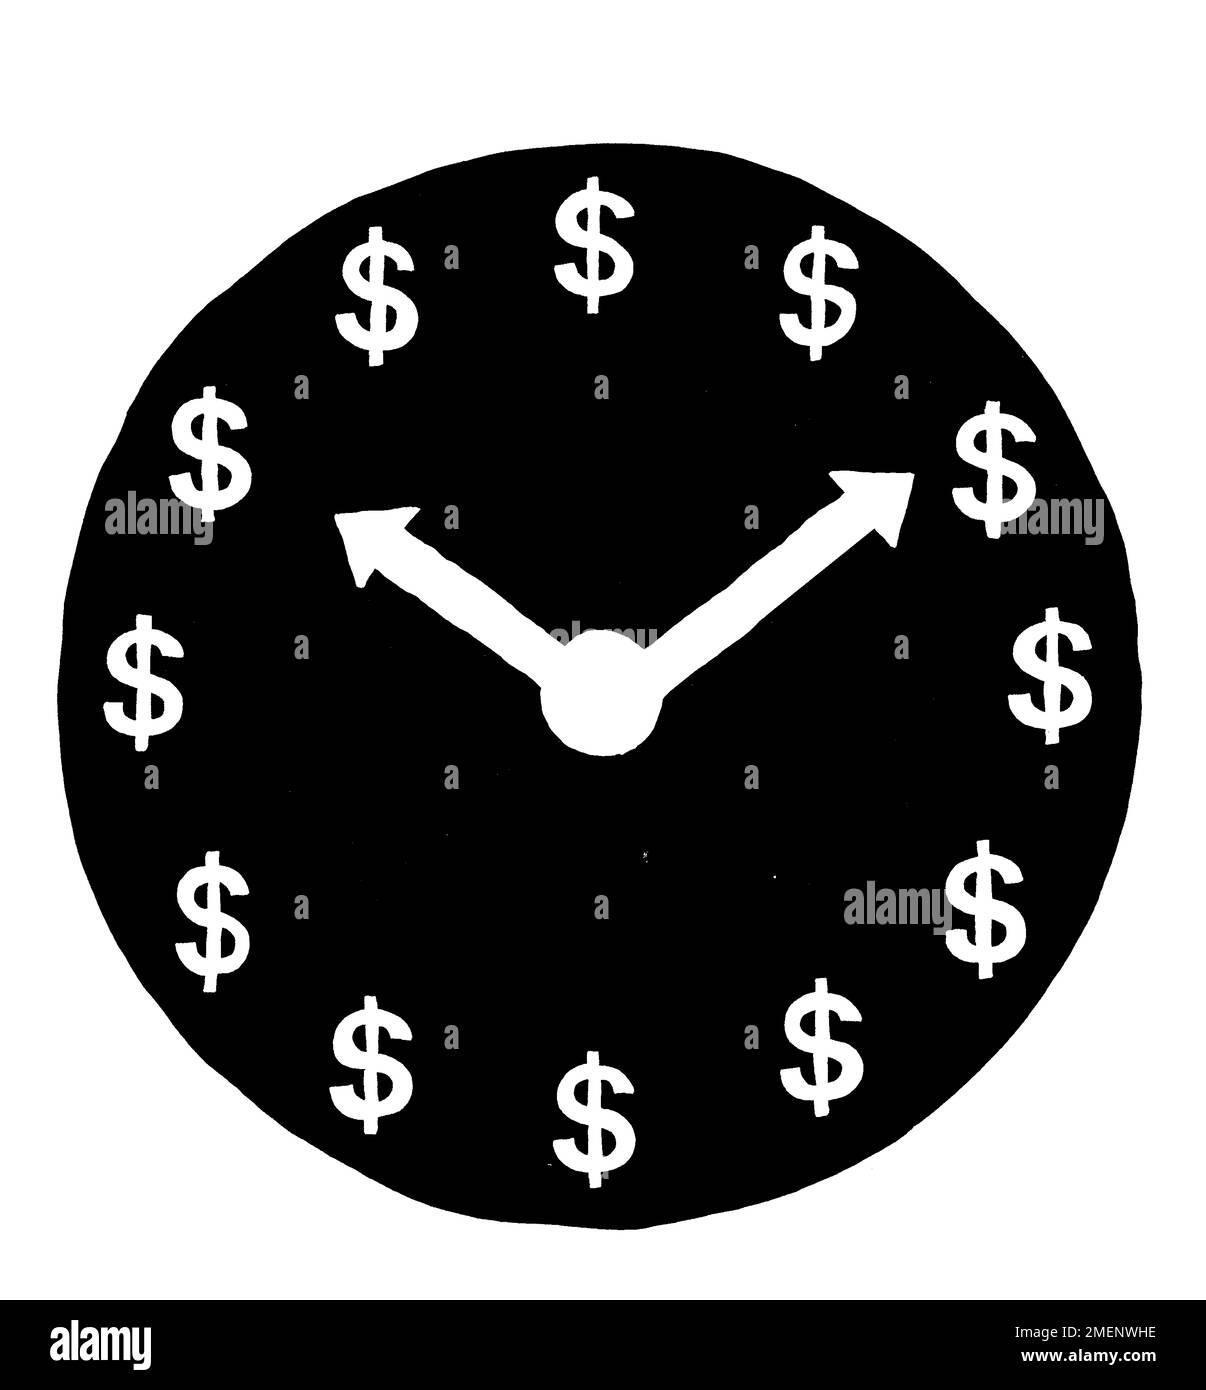 Illustrazione in bianco e nero del quadrante dell'orologio con segni in dollari invece di numeri Foto Stock